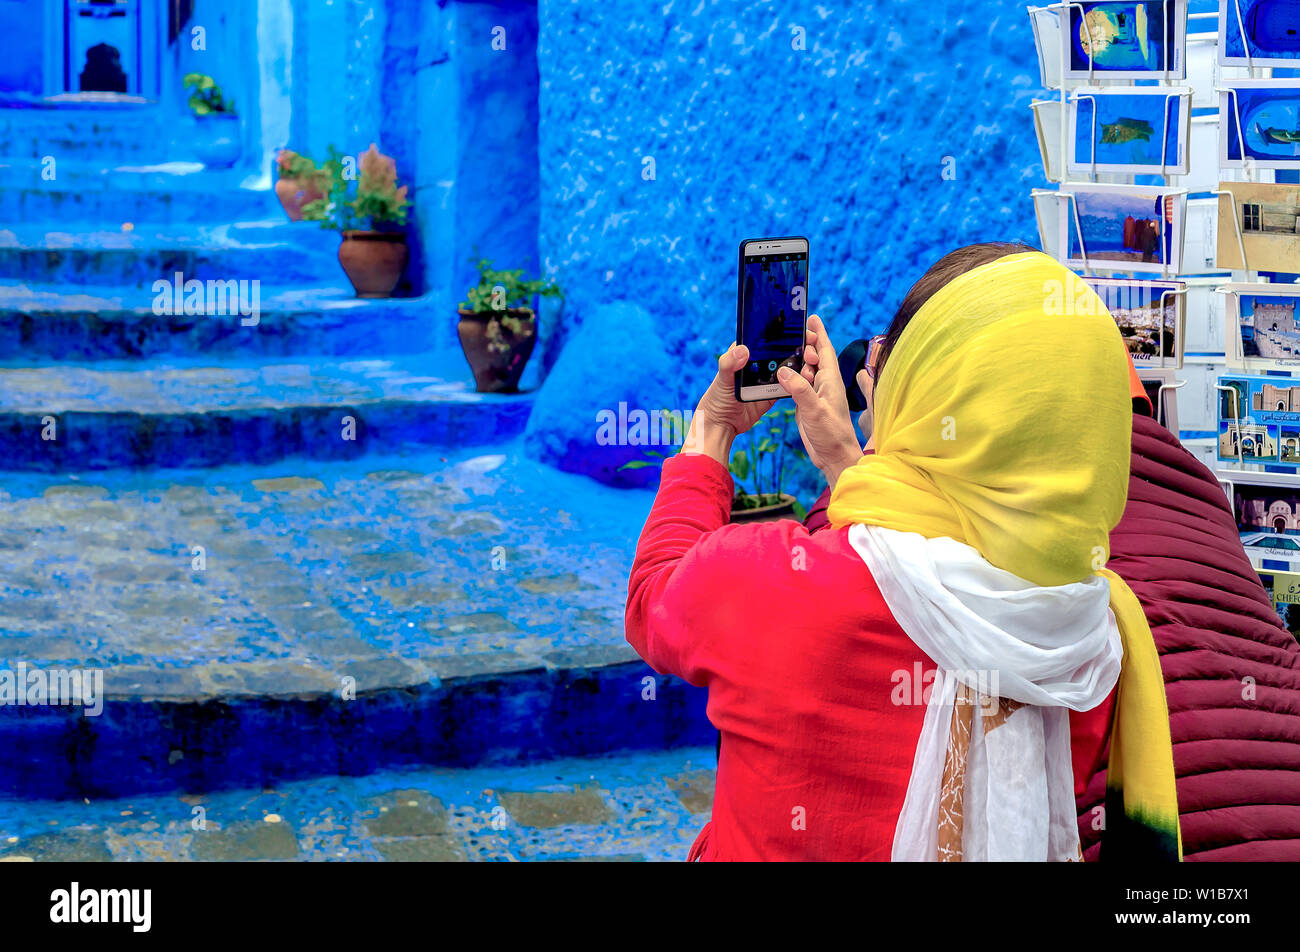 Chefchaouen, Marocco - 24/04/2019: turisti fotografare a Chefchaouen, una bellissima città del nord del Marocco e visitata da turisti provenienti da tutto il w Foto Stock